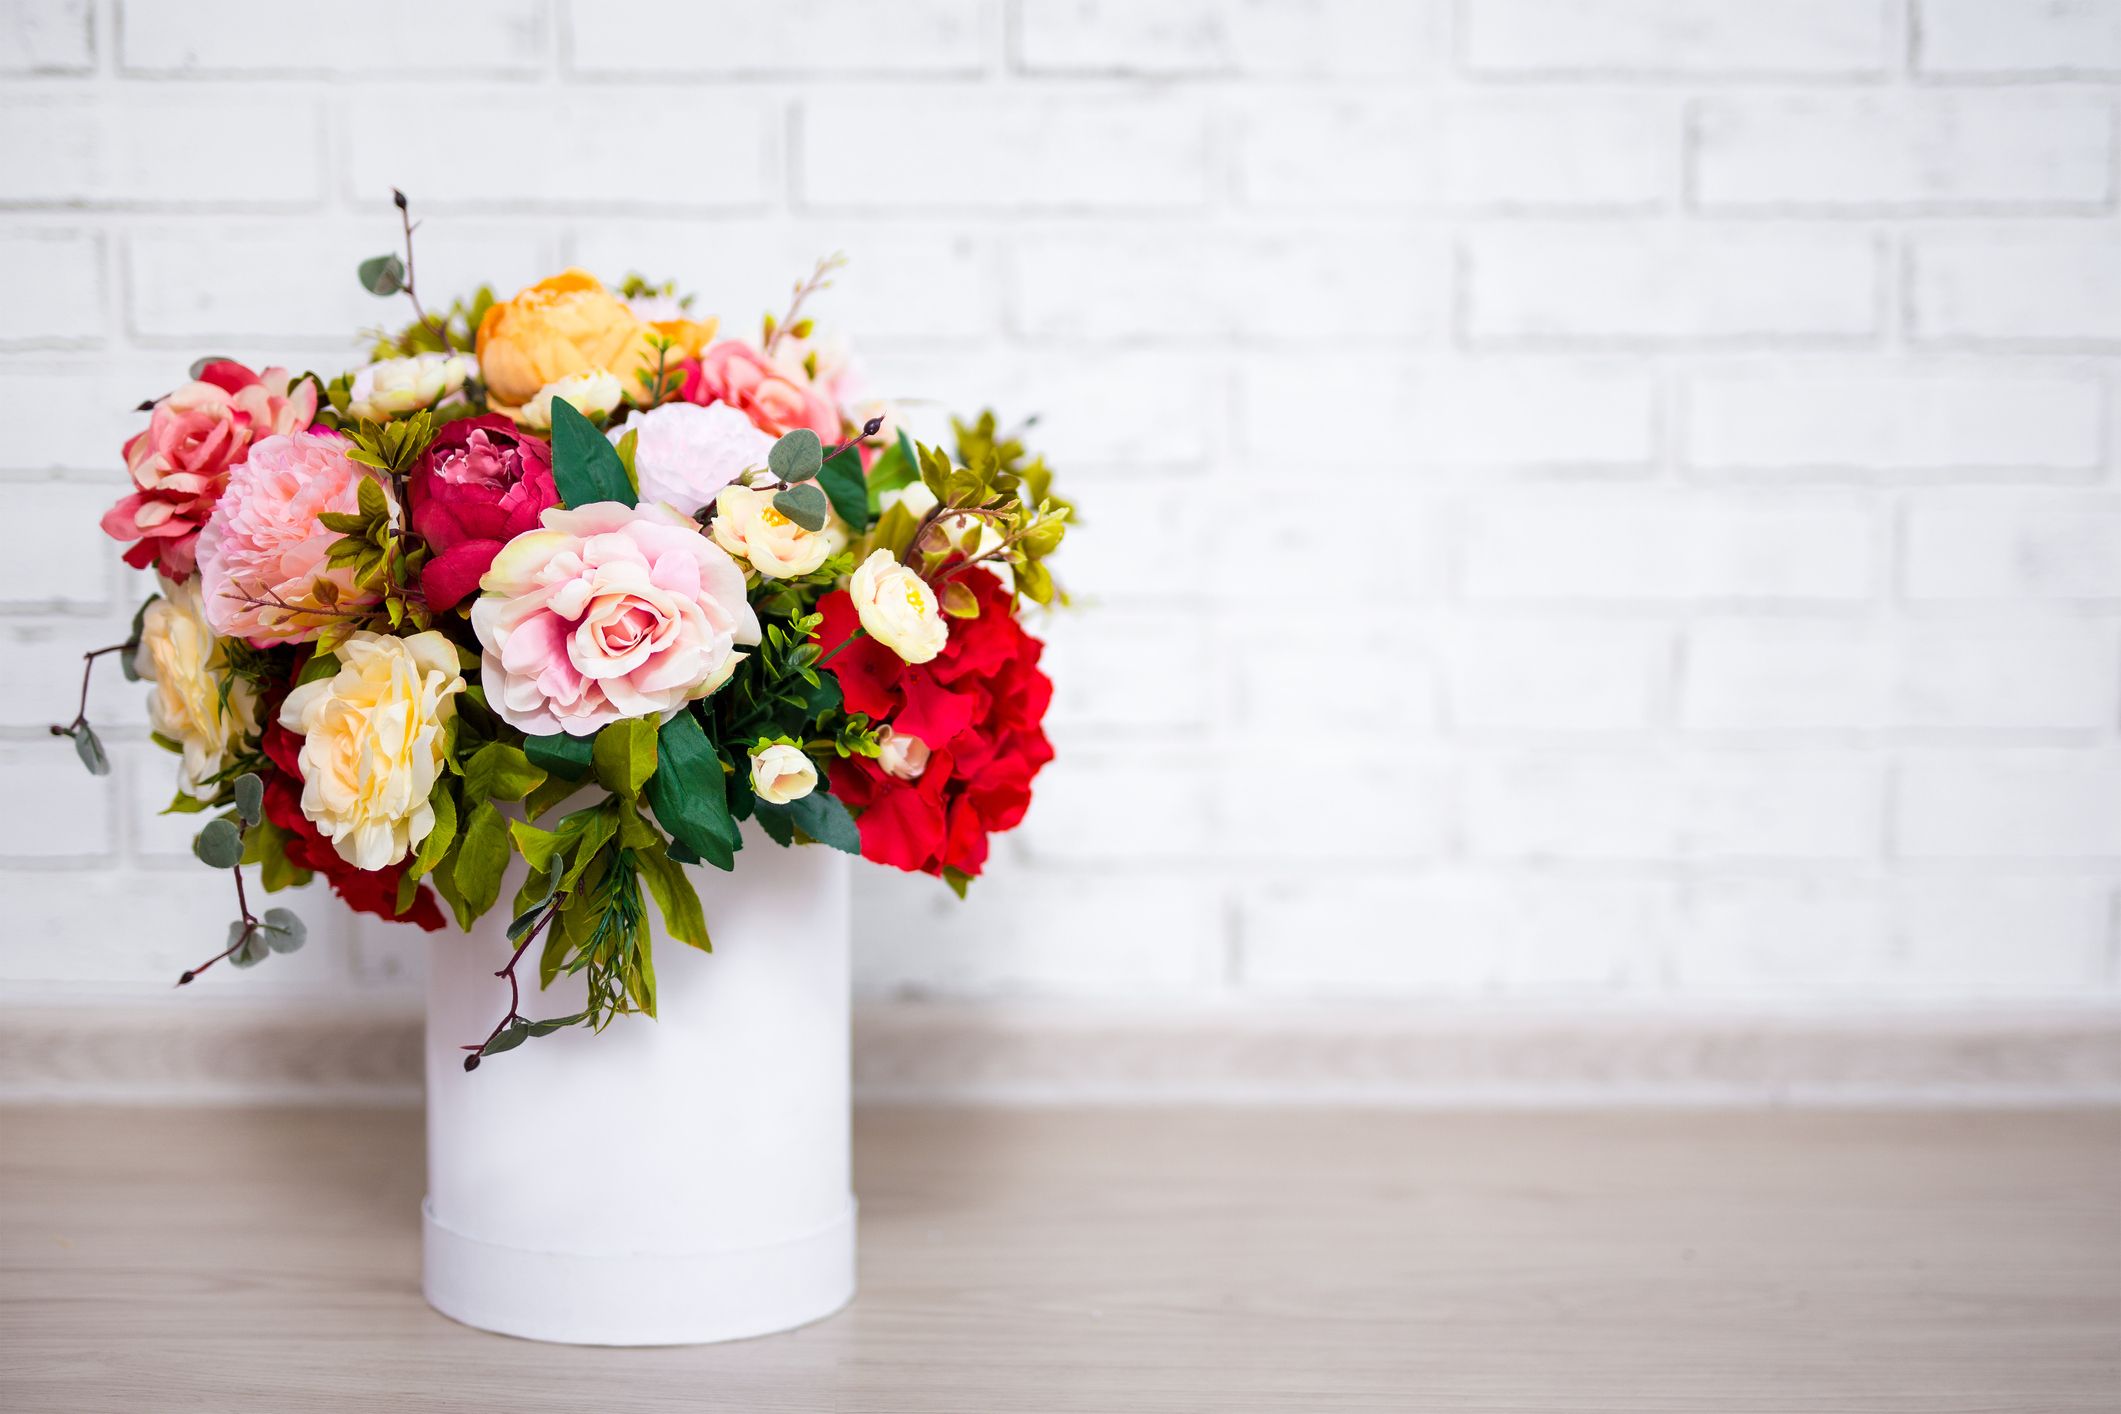 How To Make Flowers Last Longer In Vase - Keep Cut Flowers Fresh